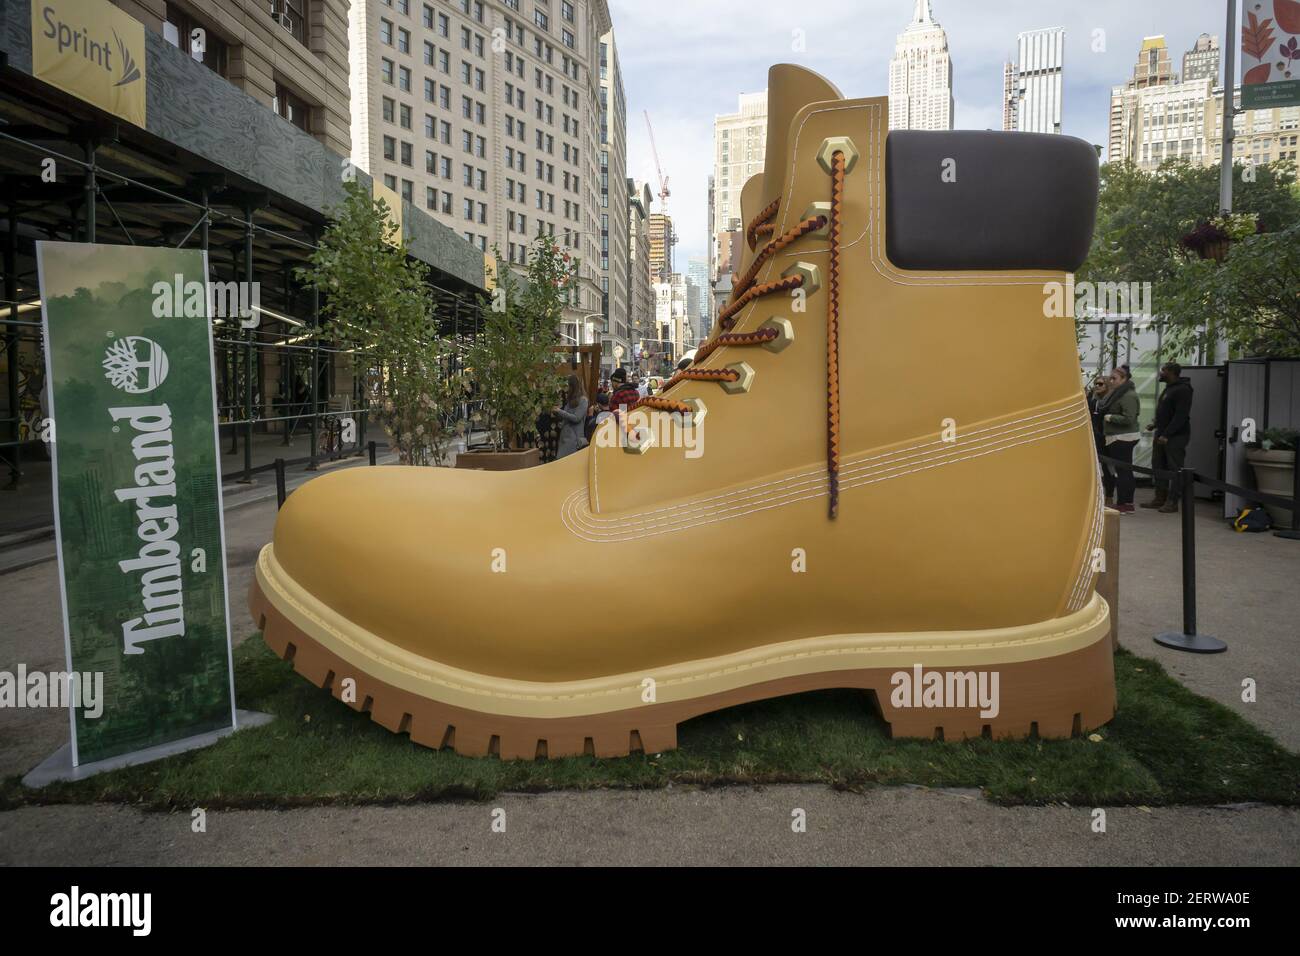 Una bota gigante de Timberland atrae a los Flatiron Plaza en Nueva York martes, 16 de octubre de 2018, donde pueden poner un suculento gratis en un evento de